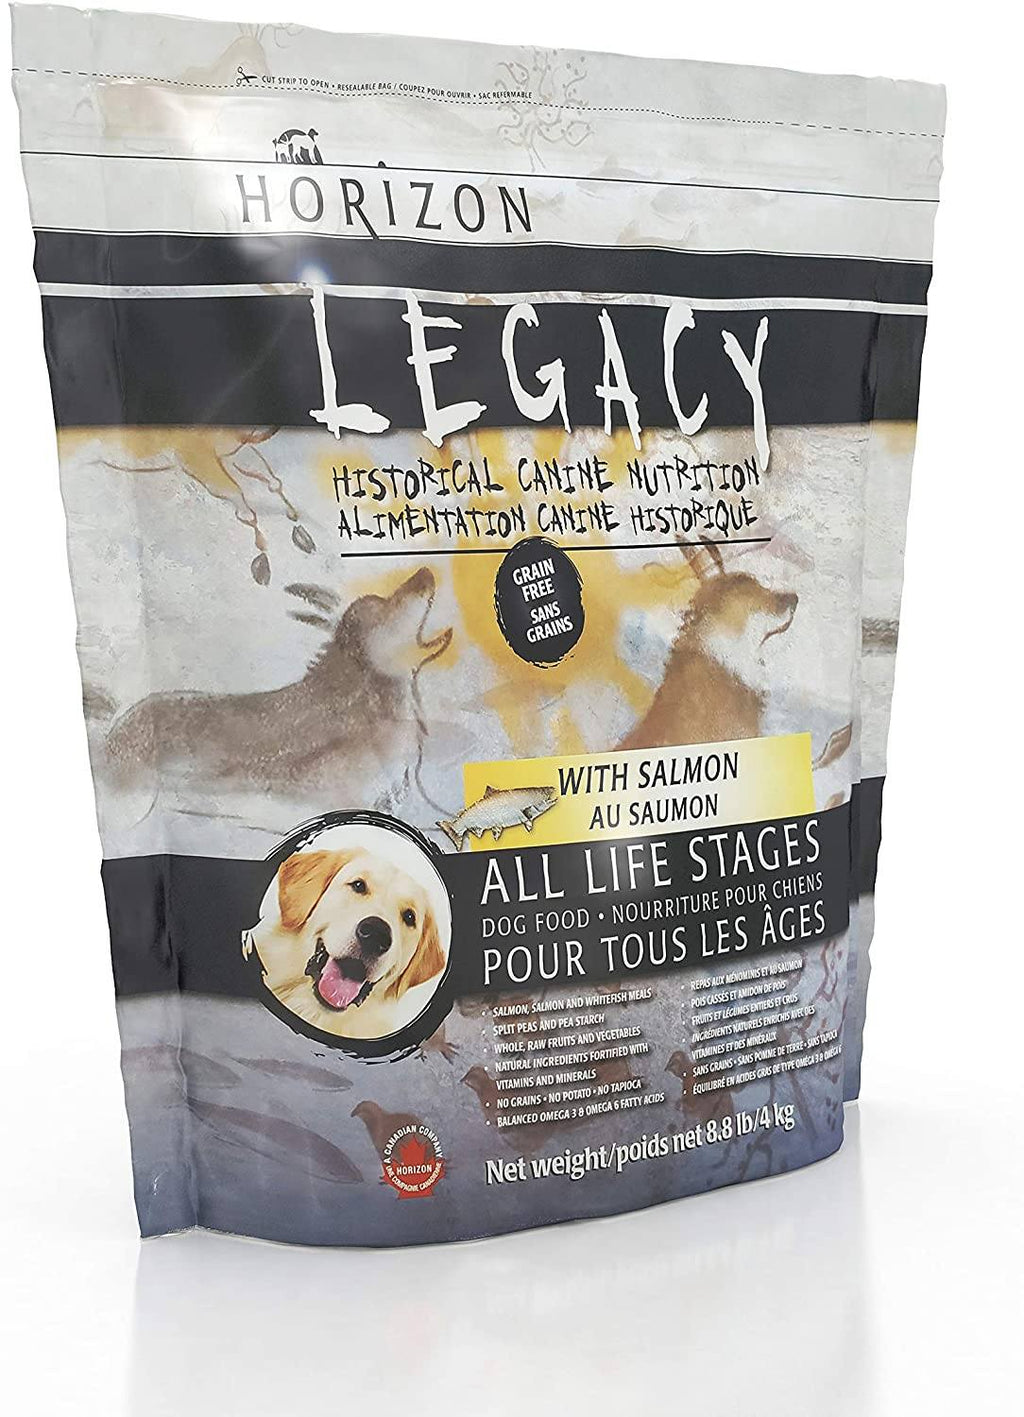 Horizon Legacy Grain-Free with Salmon Dry Dog Food - 8.8 lb Bag  